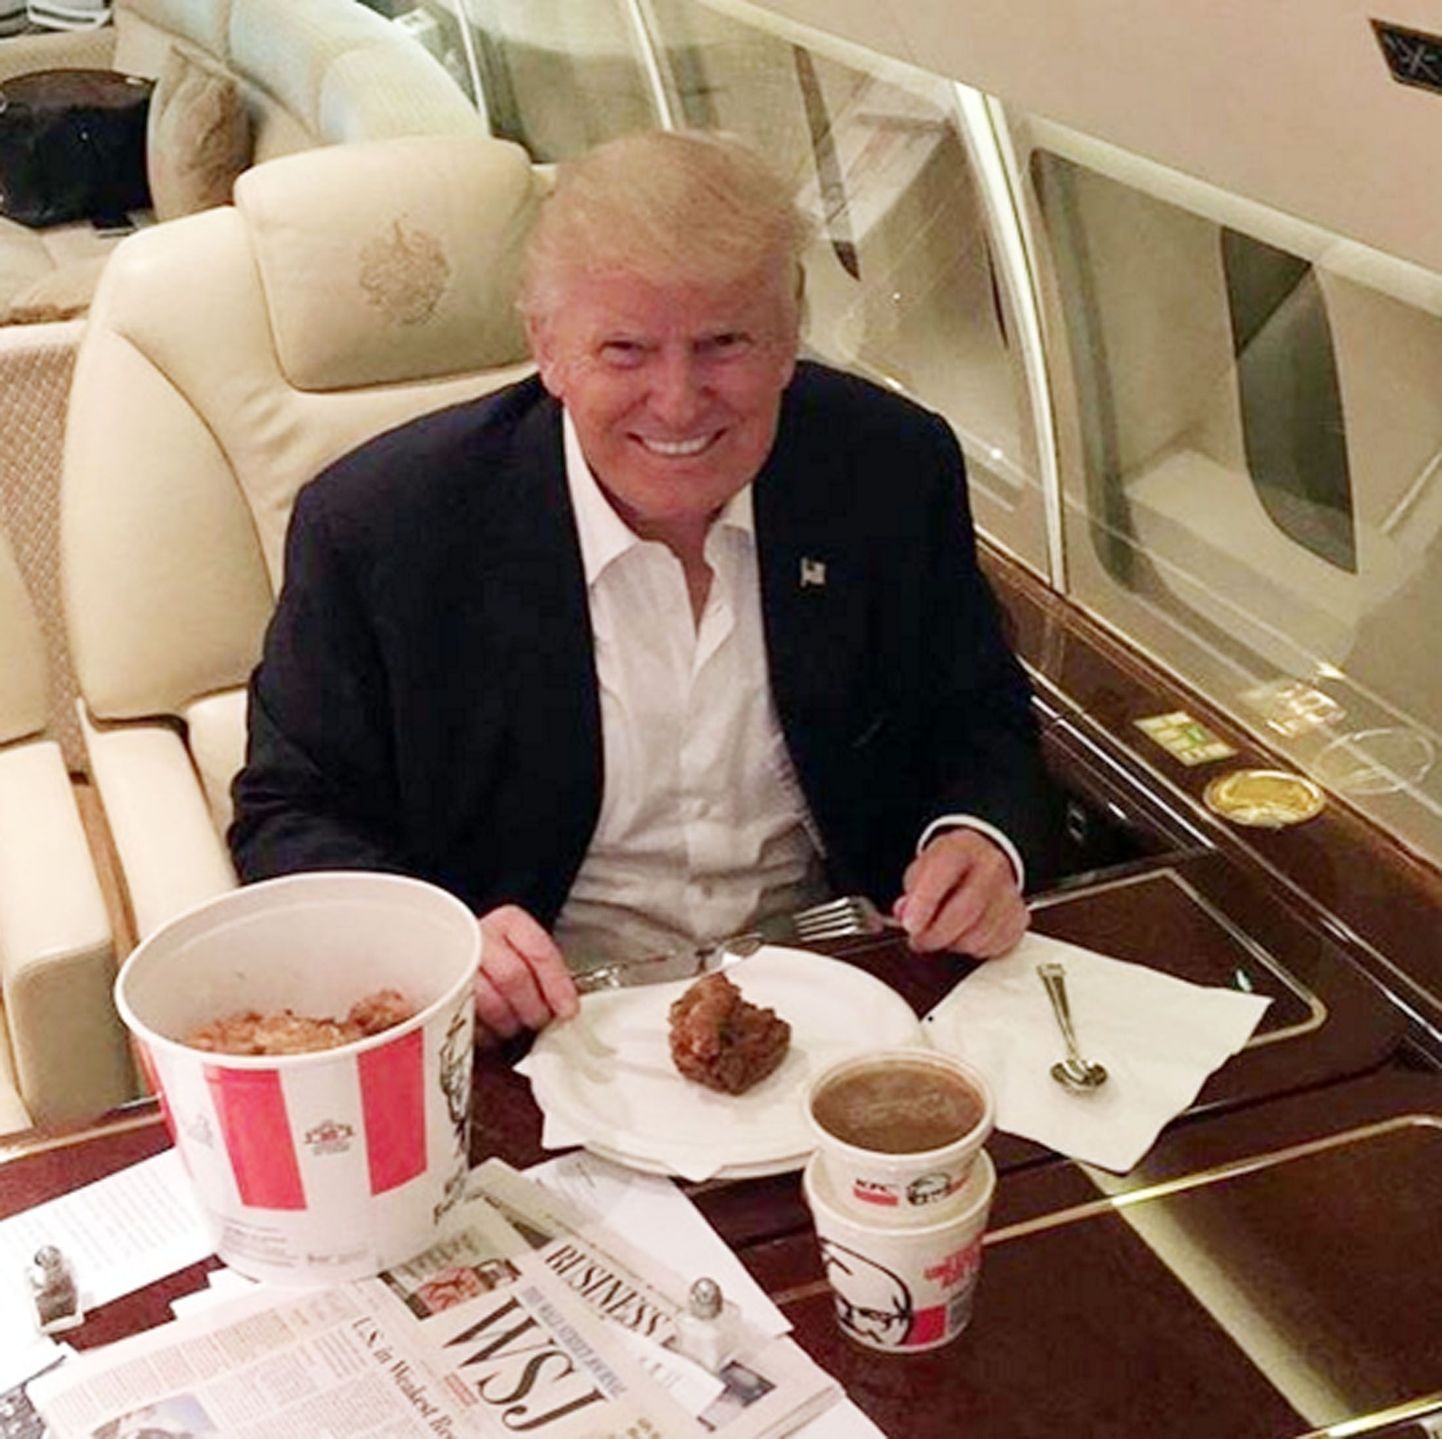 Trump oma eralennukis krõbekana kalllal: vastaste arvates näitas noa ja kahvli kasutamine, et mees on veidrikust peenutseja, kuid pooldajate hinnangul just nii peabki üks korralik ameeriklasest miljonär sööma.